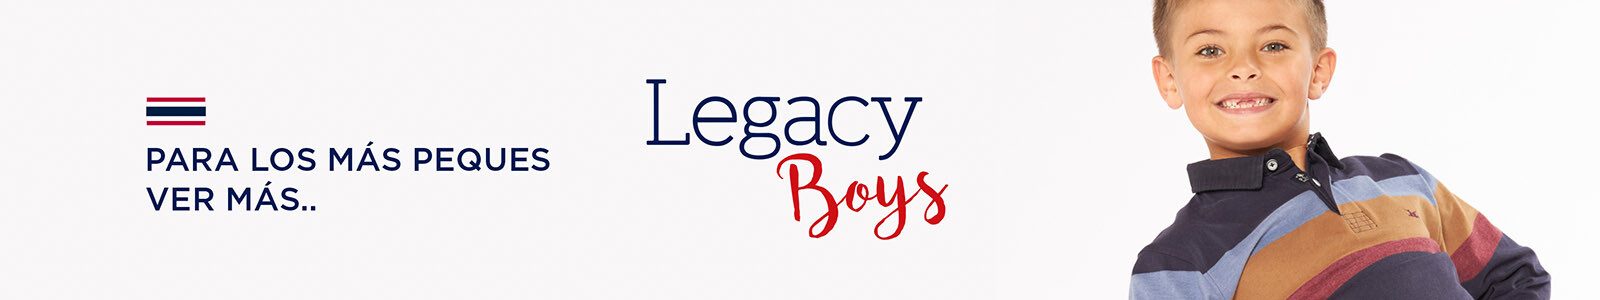 Legacy boys - Nueva colección - Cap 2